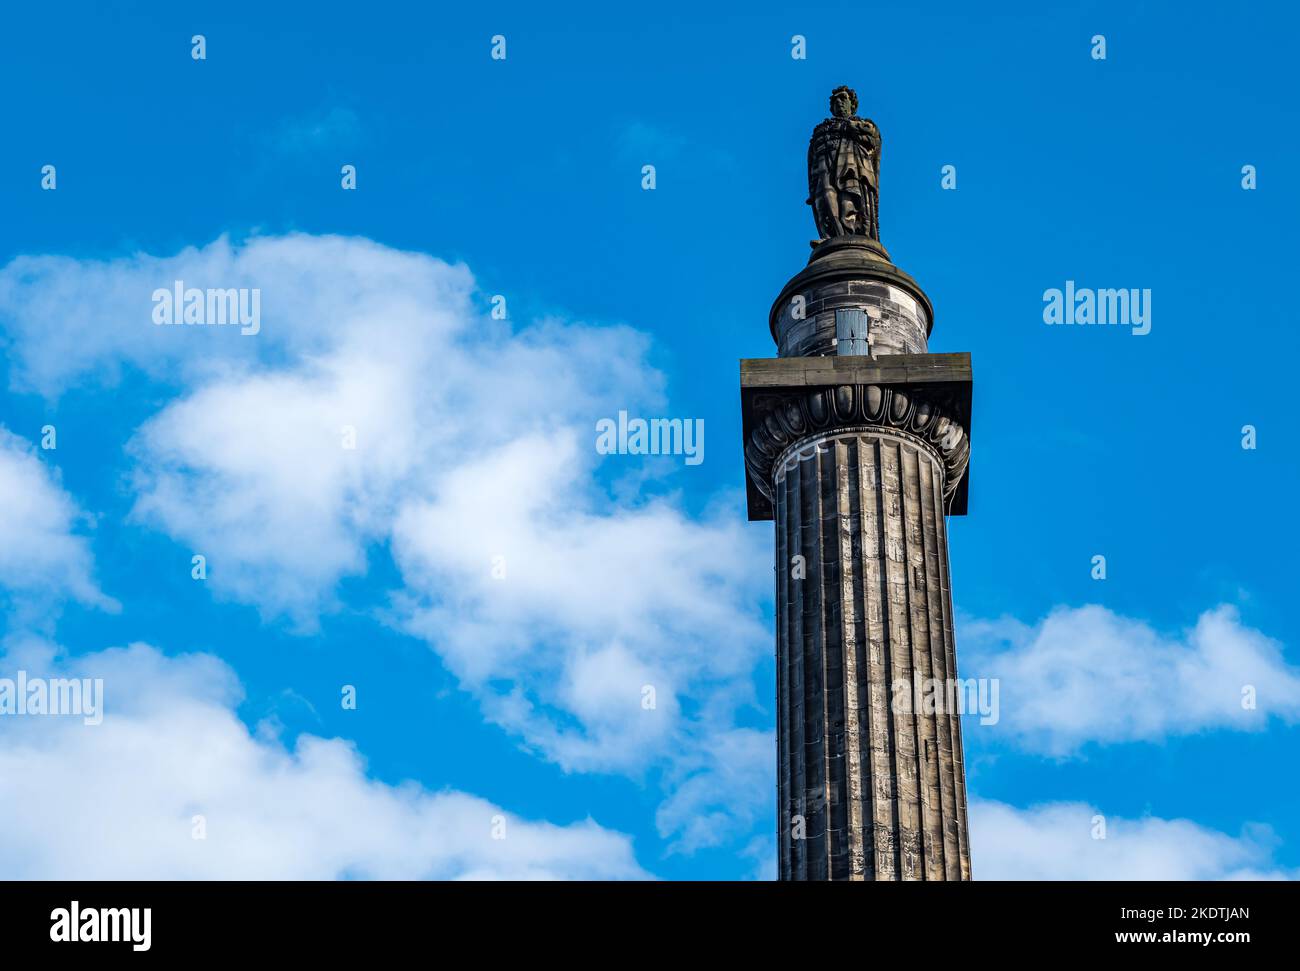 Monument Henry Dundas ou Melville sur une colonne haute contre le ciel bleu, place St Andrew, Édimbourg, Écosse, Royaume-Uni Banque D'Images